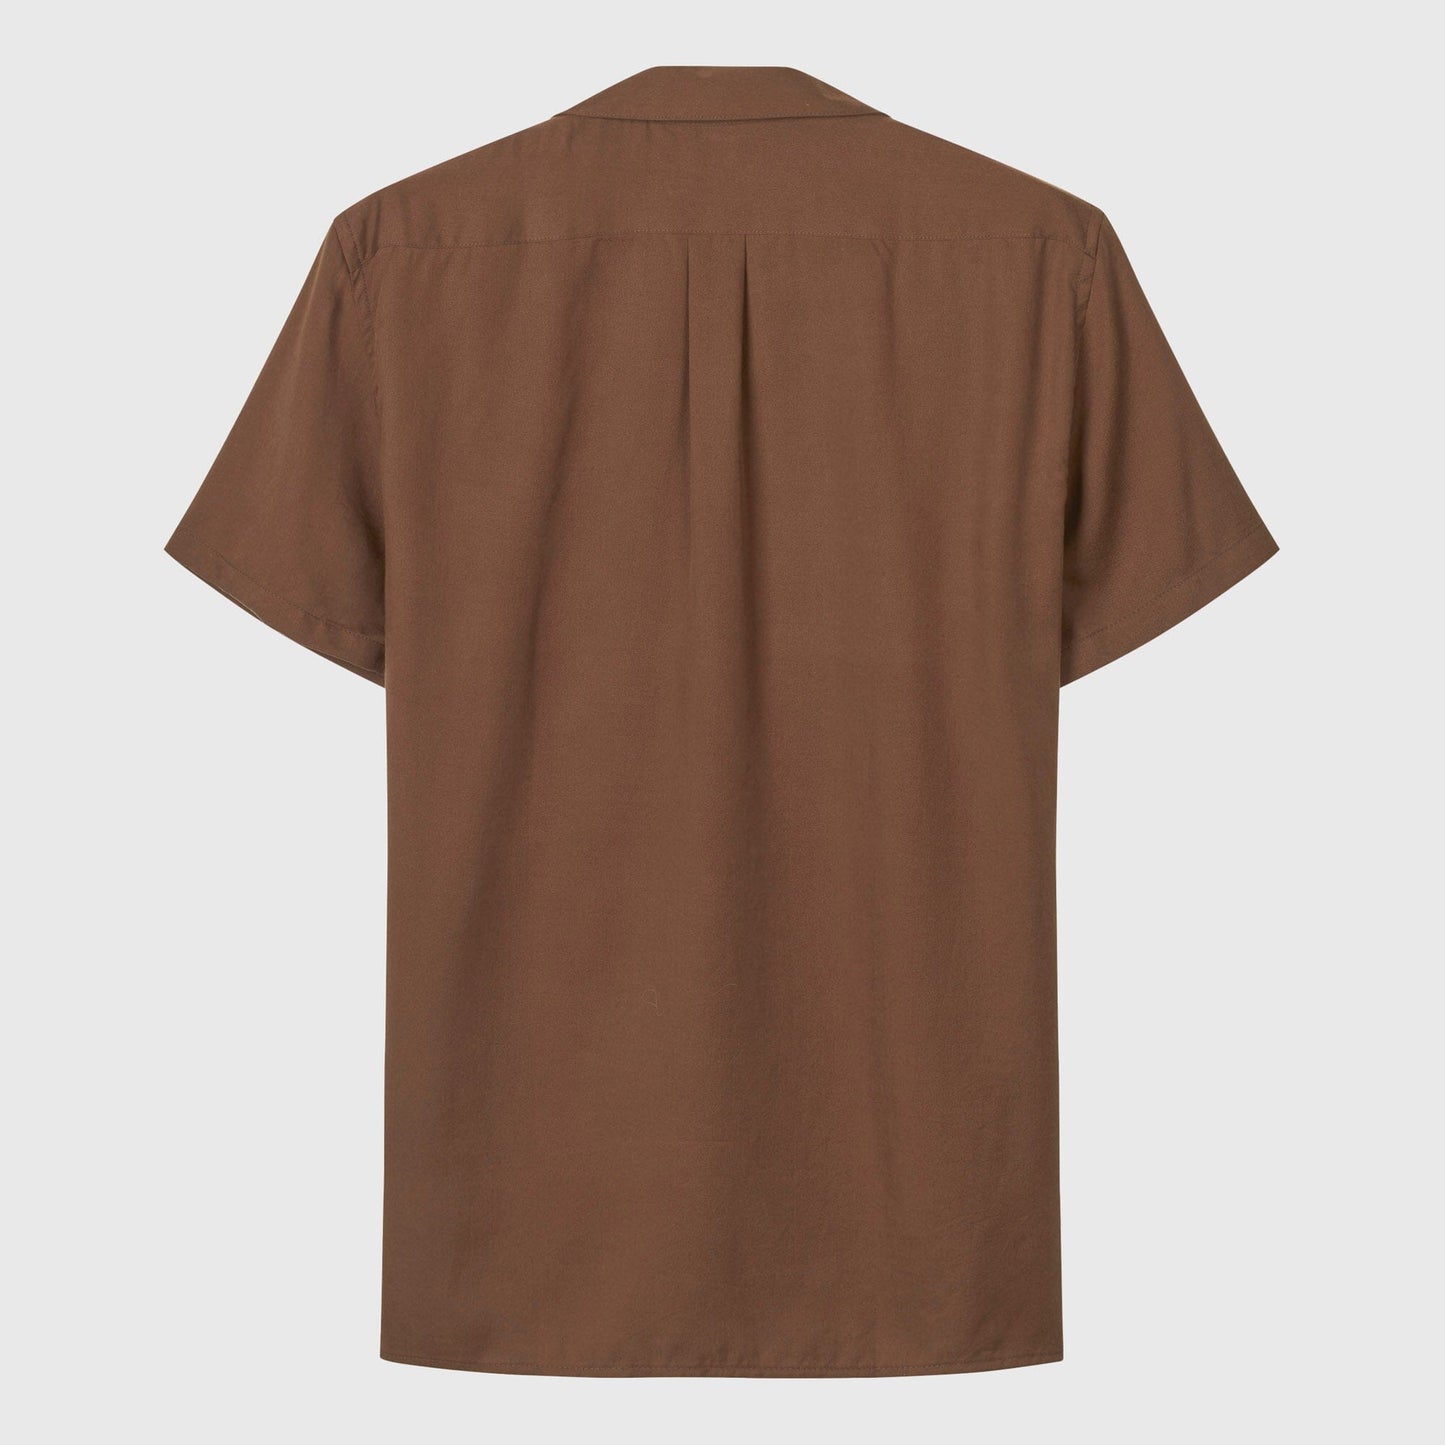 Libertine-Libertine Cave Shirt - Brown Shirt Libertine-Libertine 